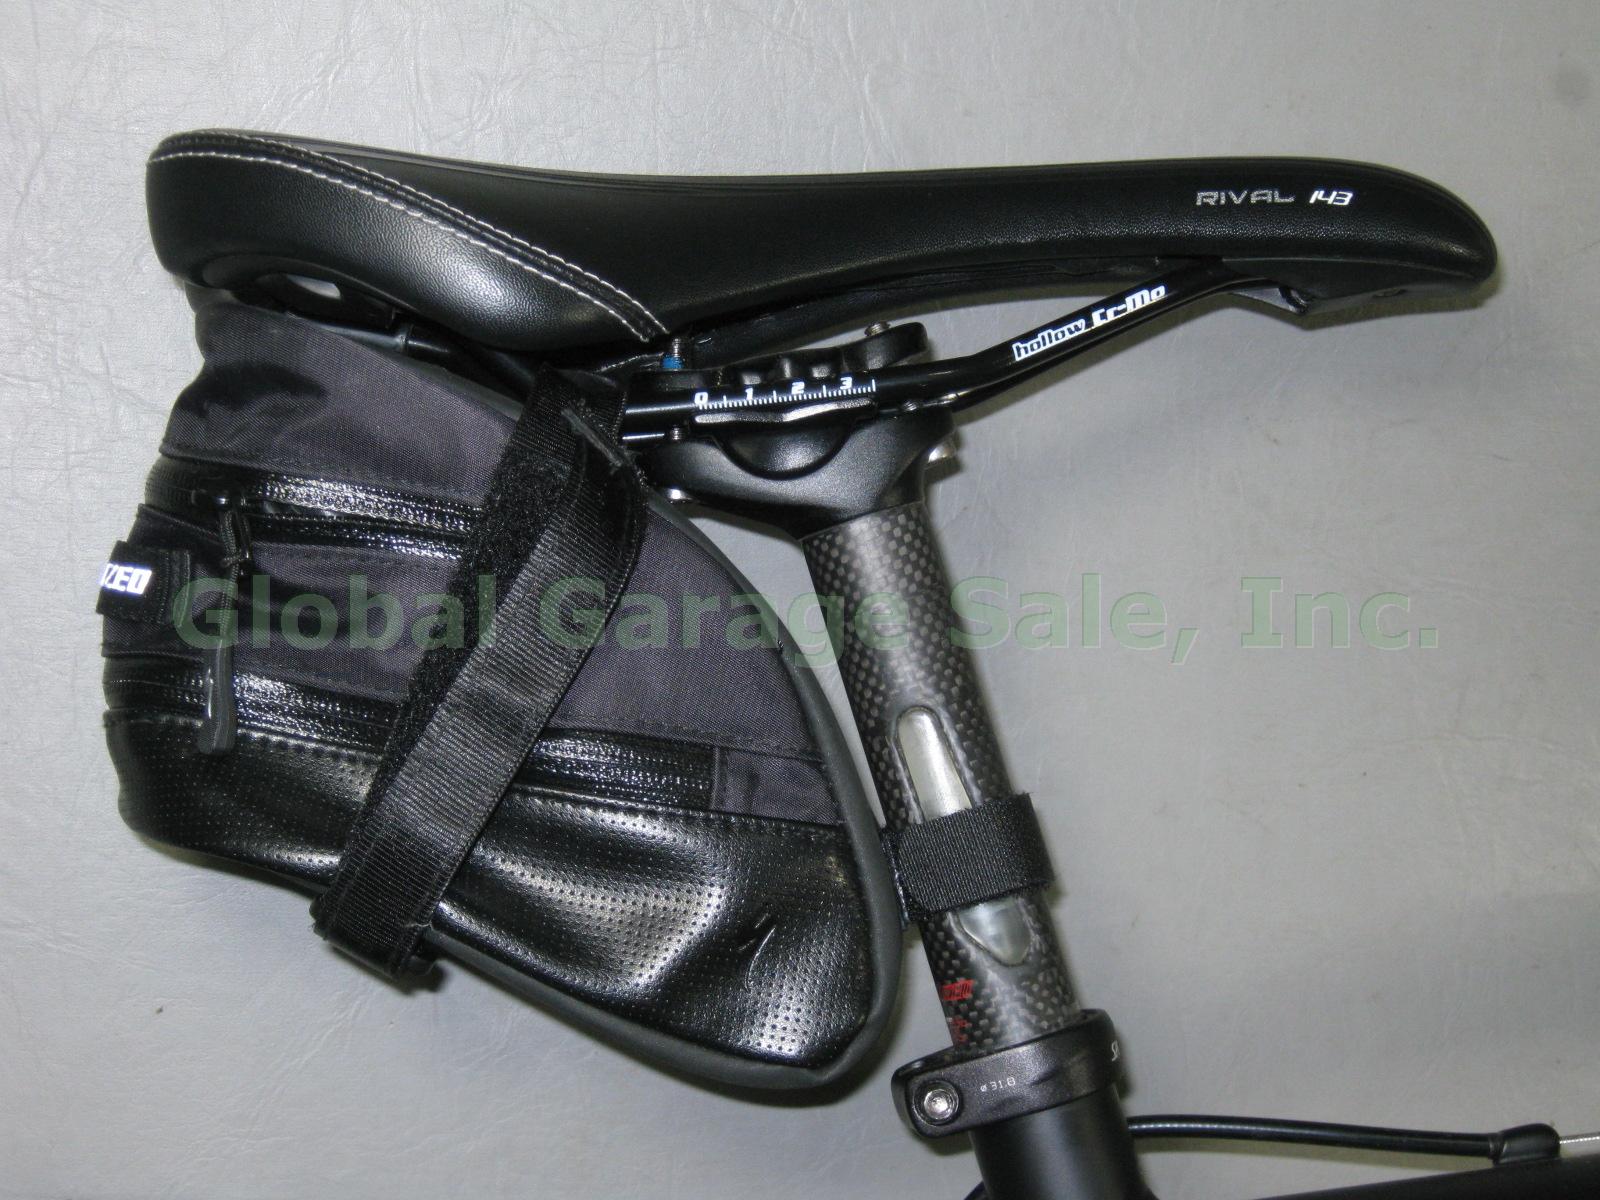 2010 Specialized Tricross Comp Max SLX Shimano 105 Cane Creek Carbon TruVativ ++ 7